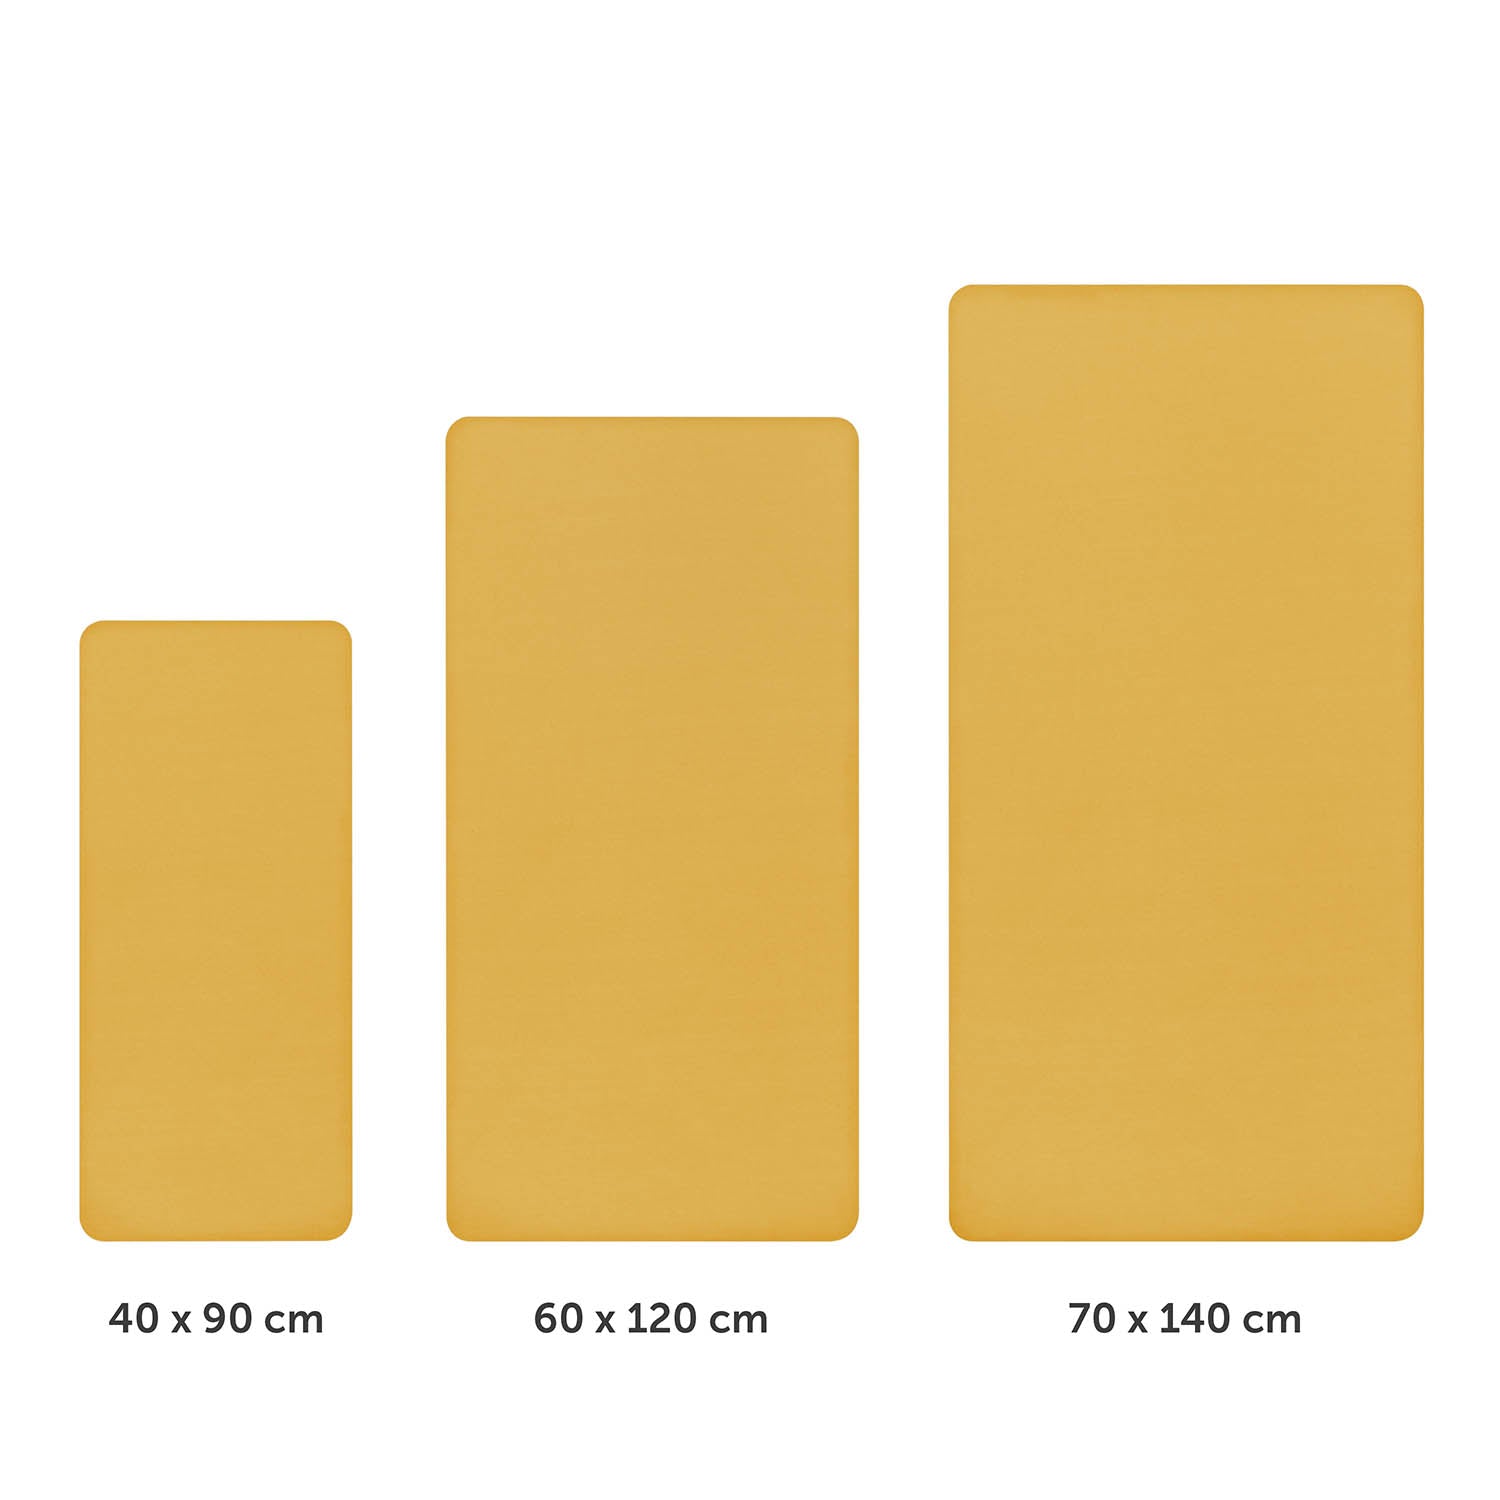 Drei unterschiedlich große gelbe Spannbettlaken nebeneinander dargestellt mit Größenangaben 40x90 cm 60x120 cm und 70x140 cm